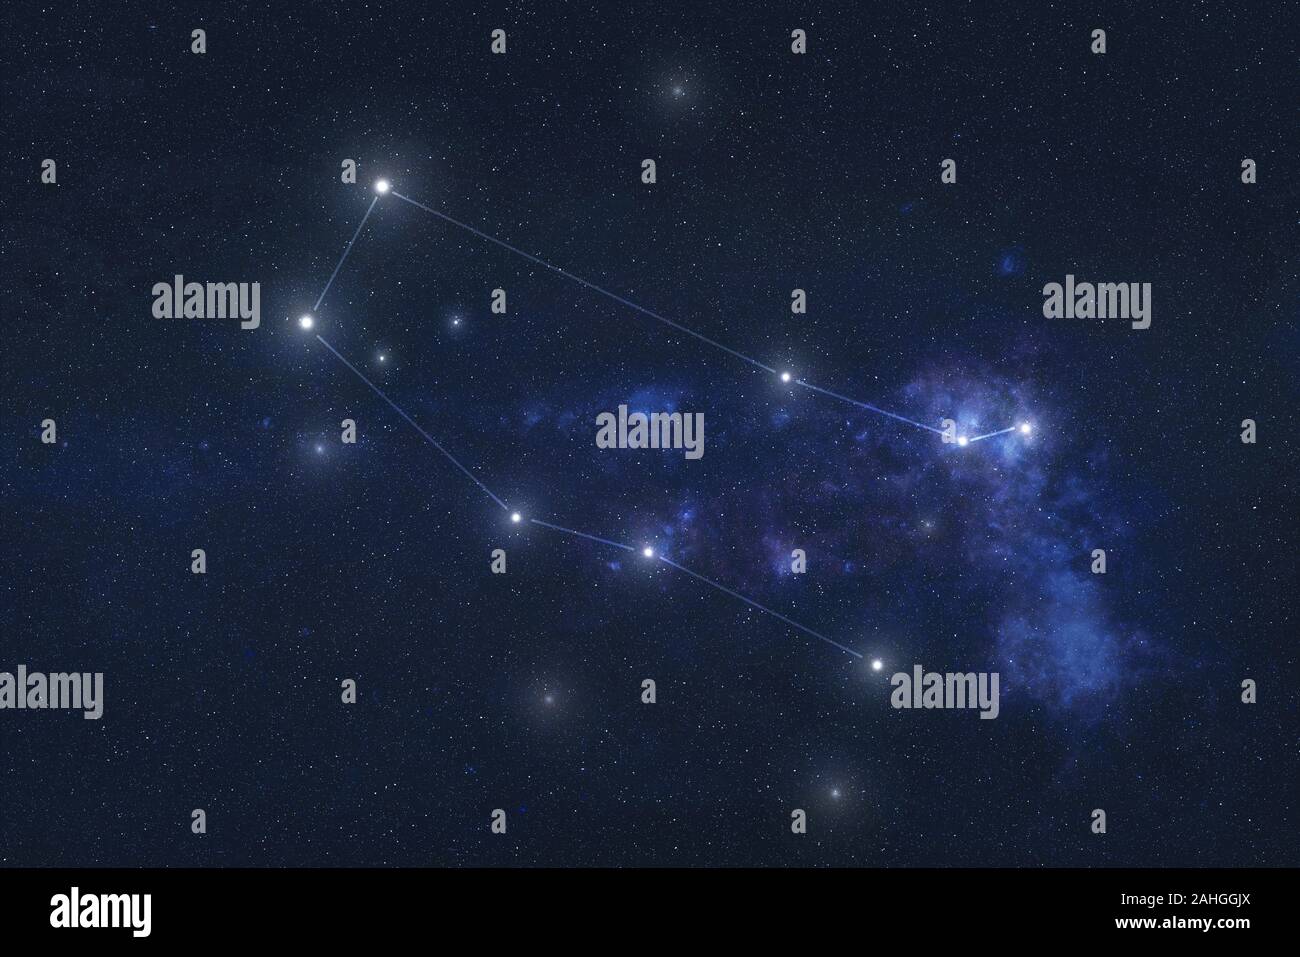 Gemini Sternbild Sterne Im Weltraum Sternzeichen Zwillinge Sternbild Linien Elemente Dieses Bild Wurde Von Der Nasa Eingerichtet Stockfotografie Alamy